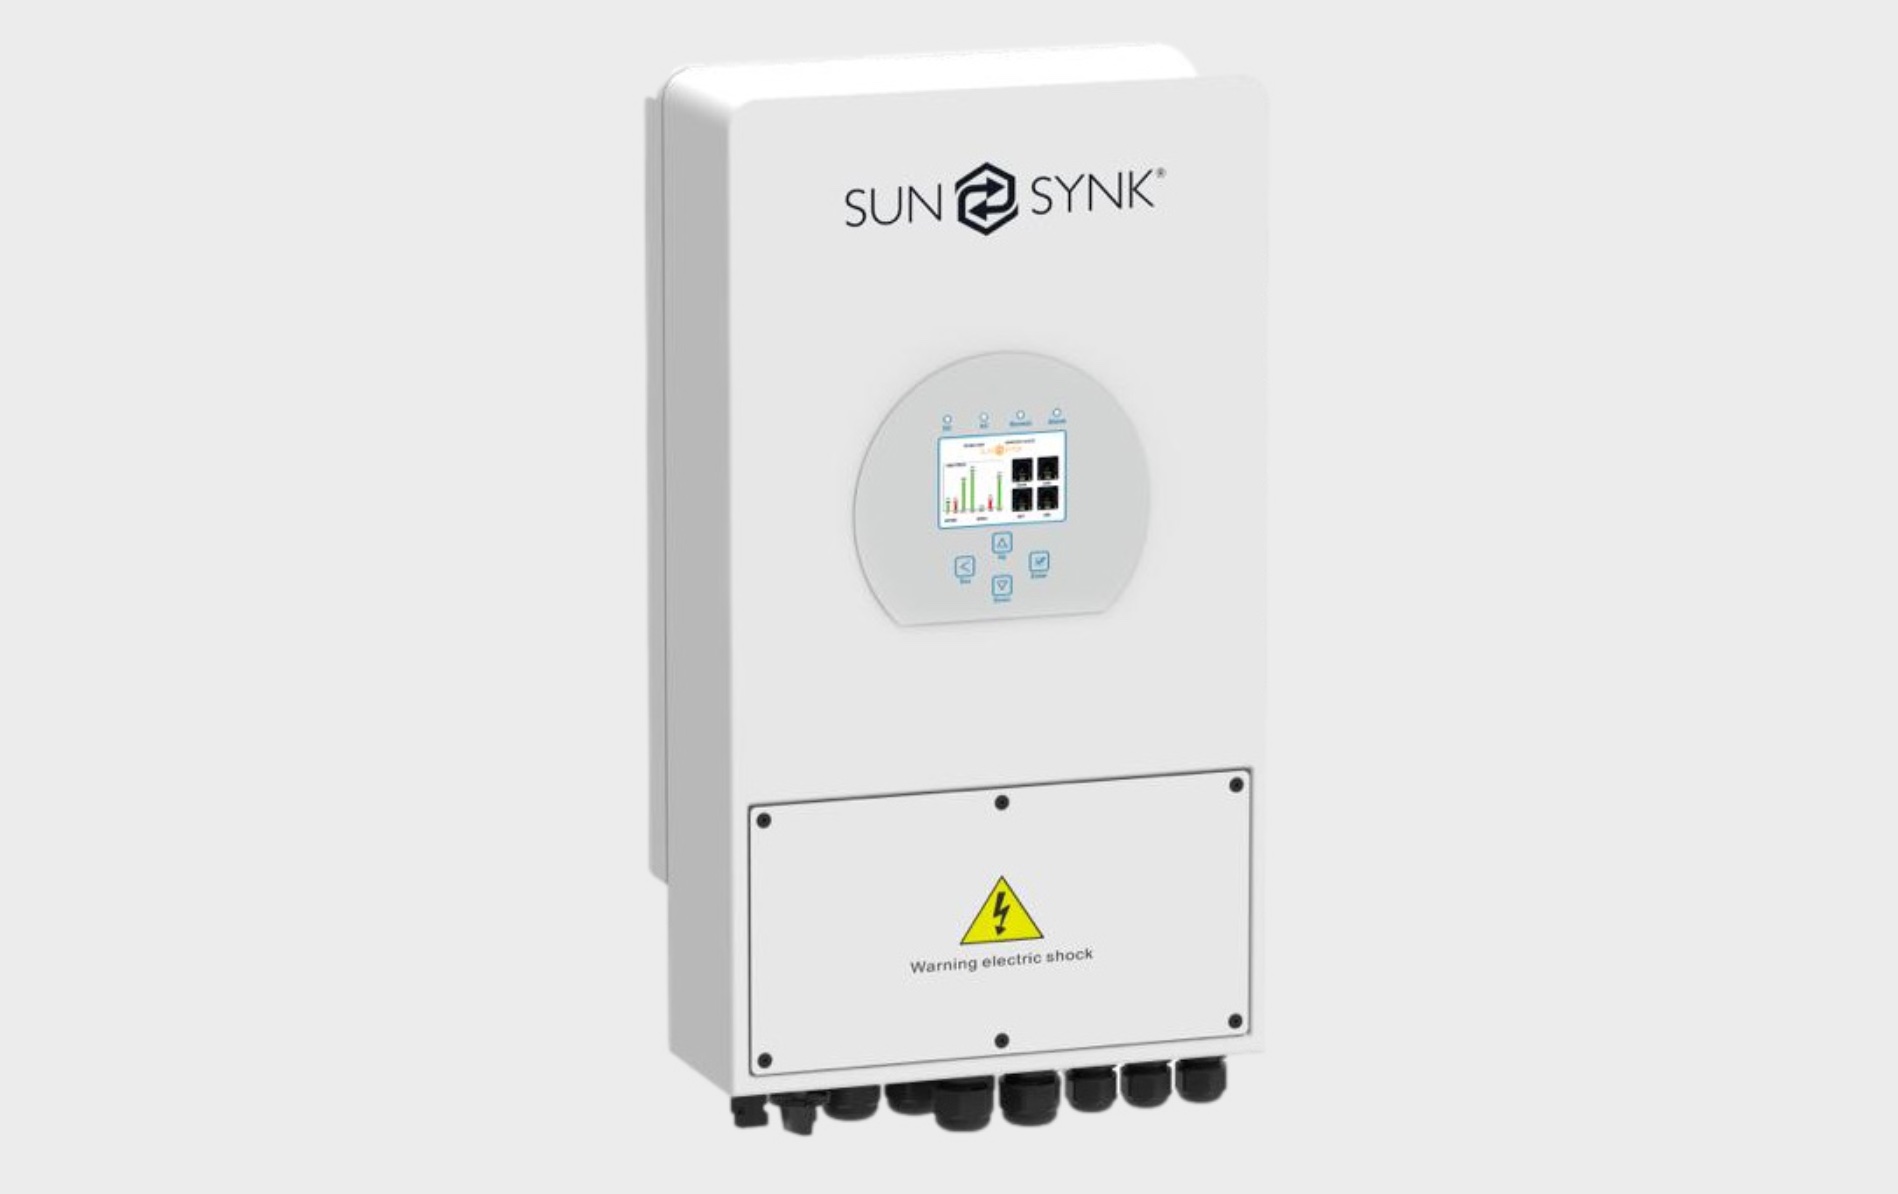 Synsynk 3.6 ECCO Hybrid Inverter. Credit: USER MANUAL SUNSYNK-3.6K-SG01LP1 / SUNSYNK-3.6K-SG03LP1 / SUNSYNK-5K-SG01LP1 / SUNSYNK-5K-SG03LP1